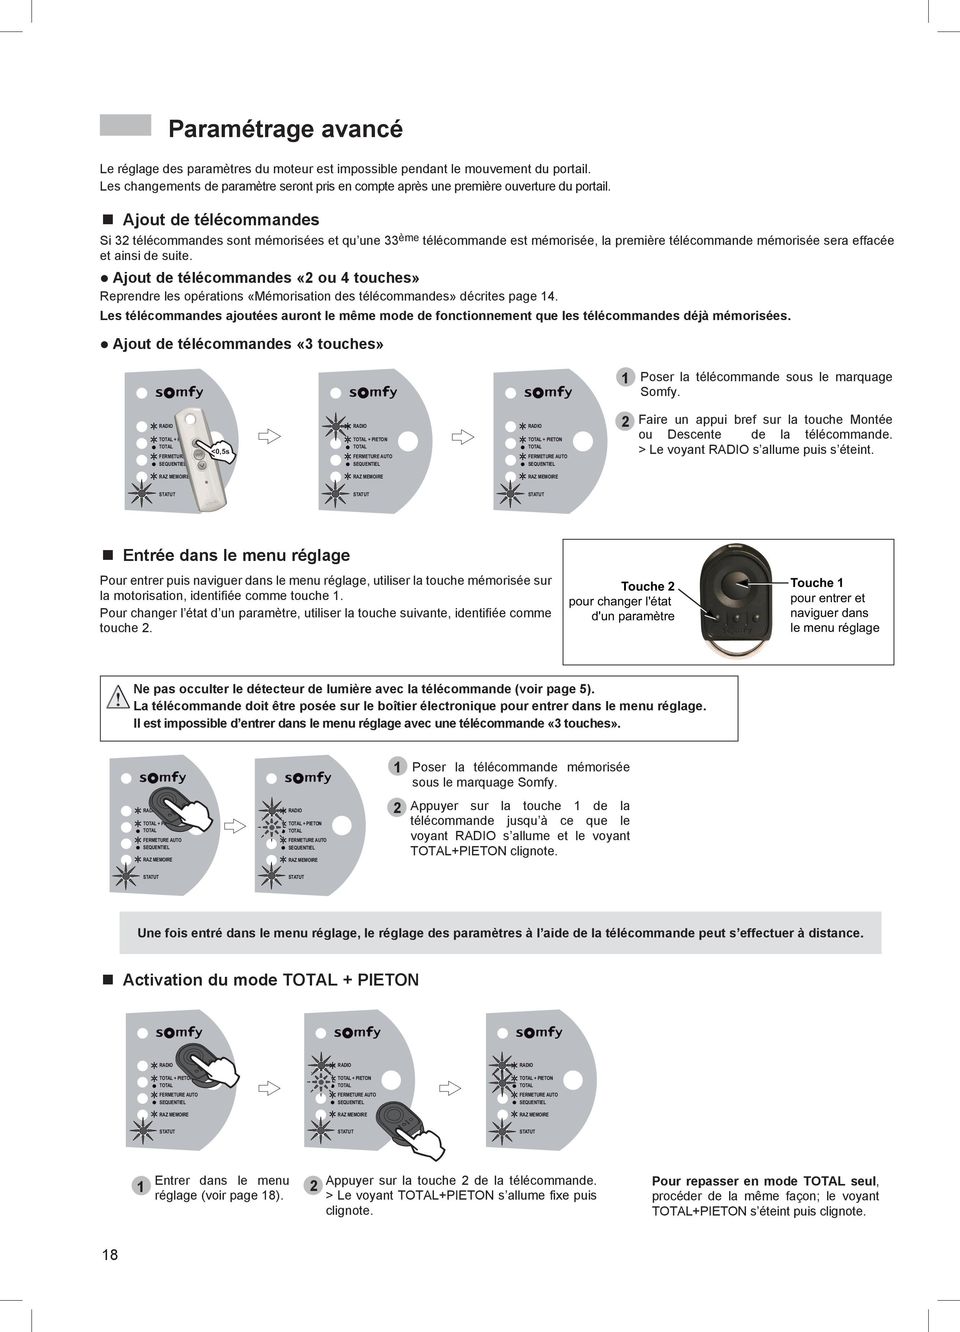 l Ajout de télécommandes «2 ou 4 touches» Reprendre les opérations «Mémorisation des télécommandes» décrites page 14.